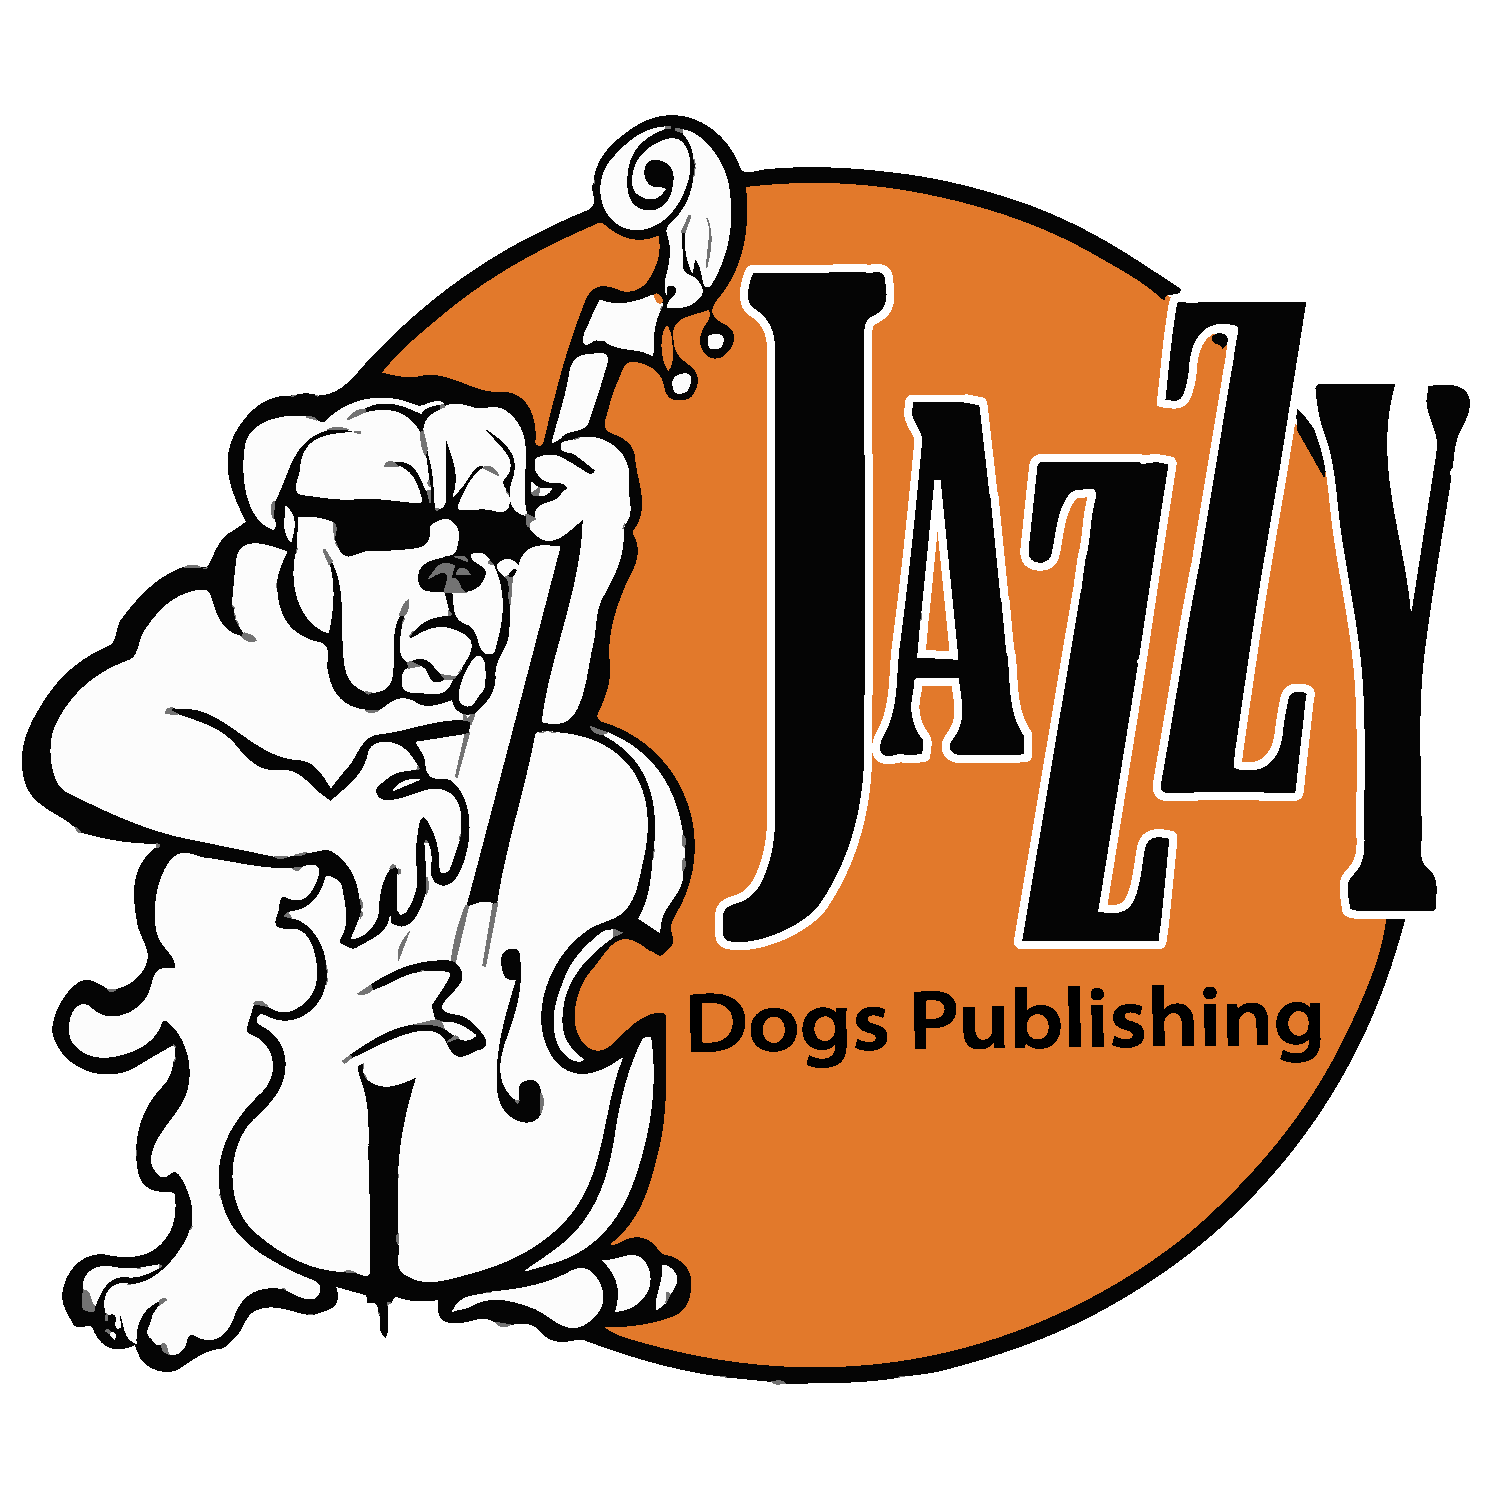 Jazzy Dogs Publishing